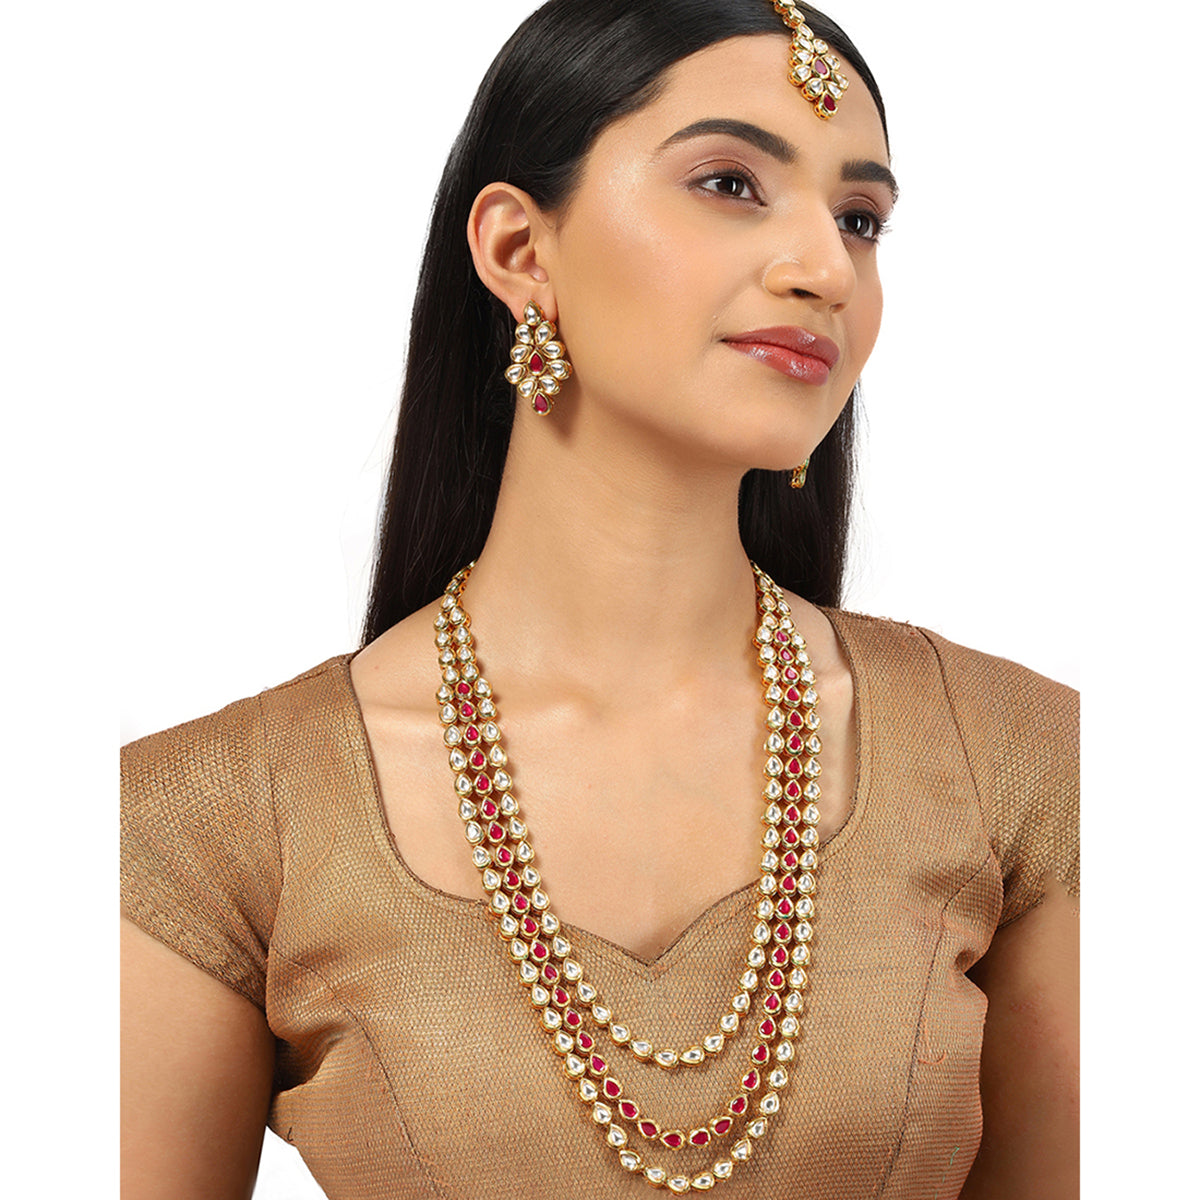 Kundan Elegance Gold Plated Necklace Set